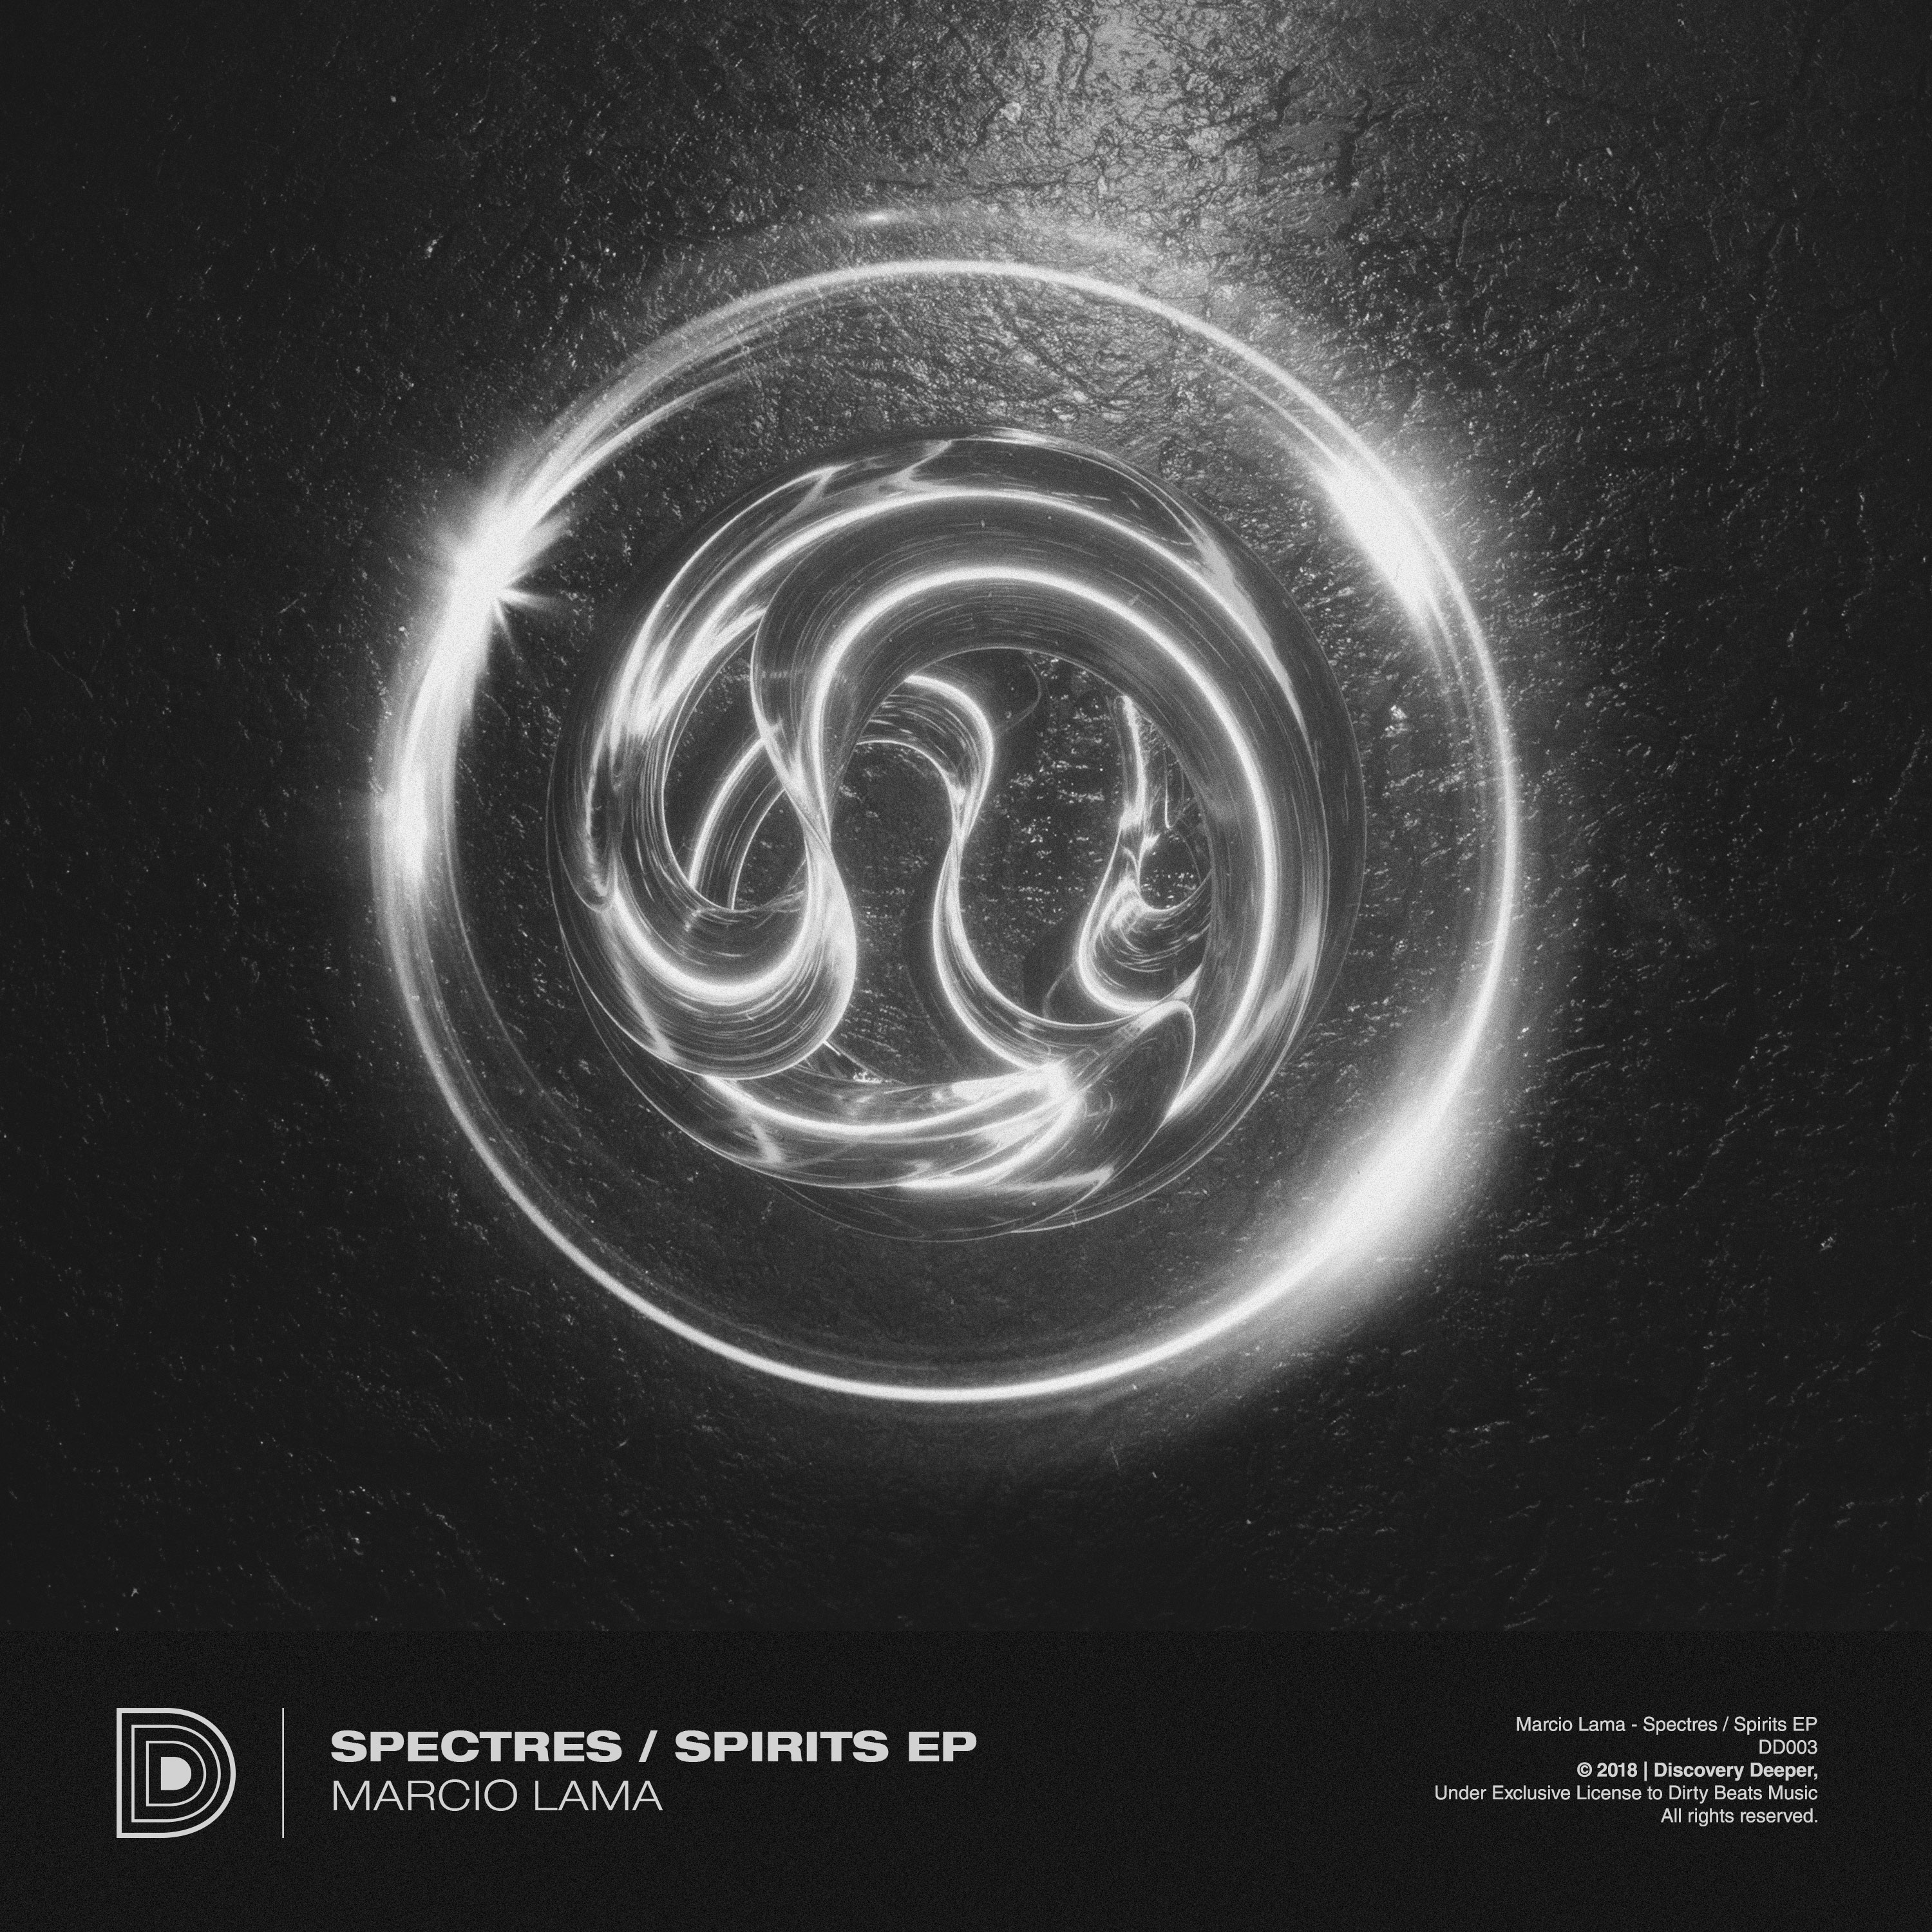 Spectres / Spirits EP